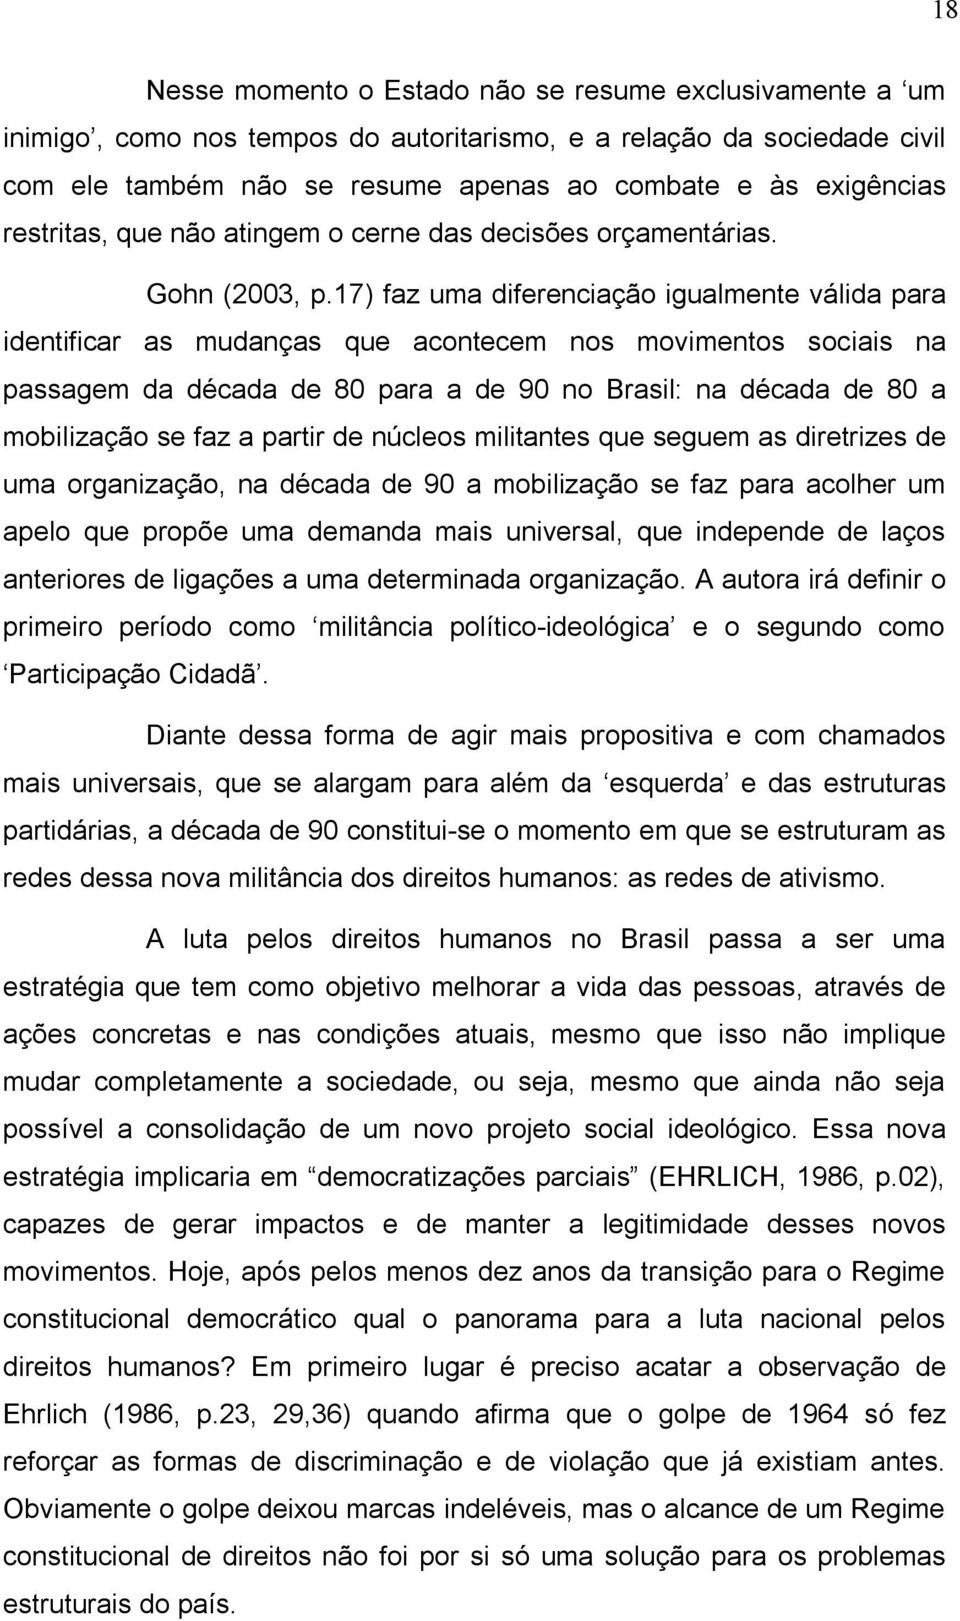 17) faz uma diferenciação igualmente válida para identificar as mudanças que acontecem nos movimentos sociais na passagem da década de 80 para a de 90 no Brasil: na década de 80 a mobilização se faz